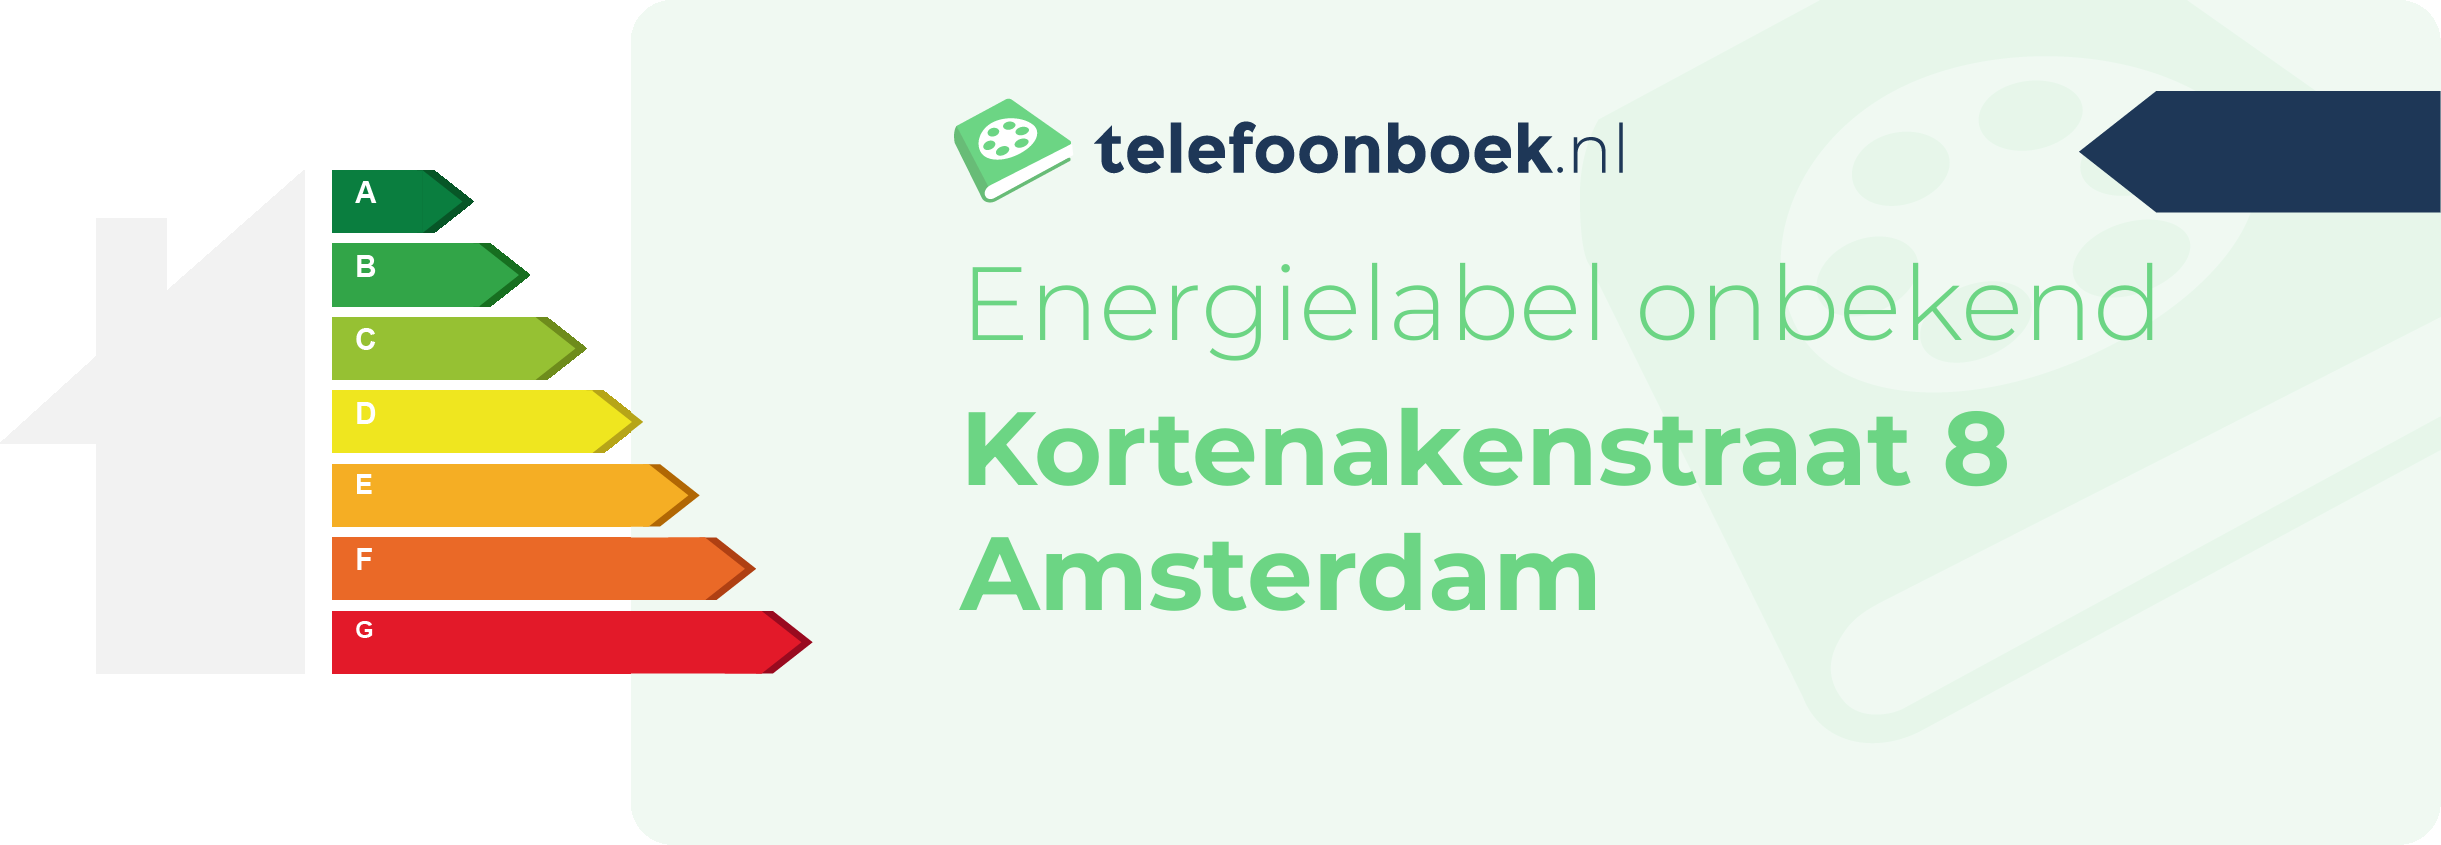 Energielabel Kortenakenstraat 8 Amsterdam